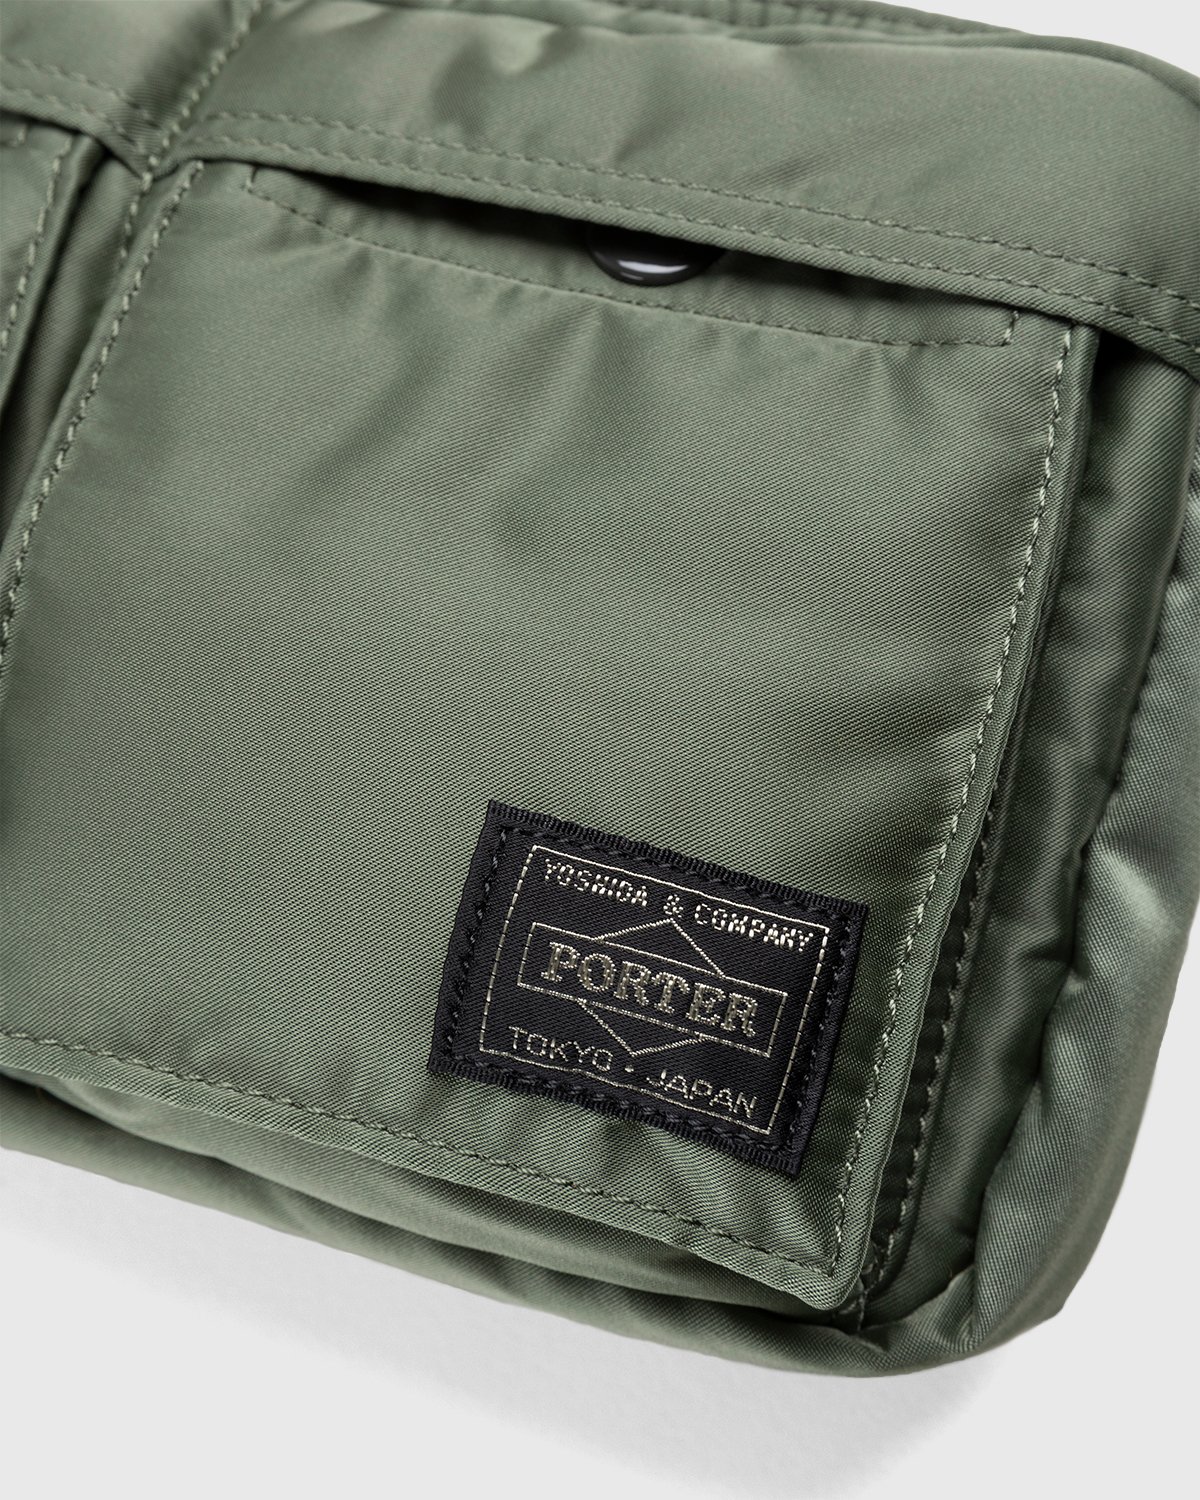 Porter-Yoshida & Co. - Tanker Shoulder Bag Sage Green - Accessories - Green - Image 6